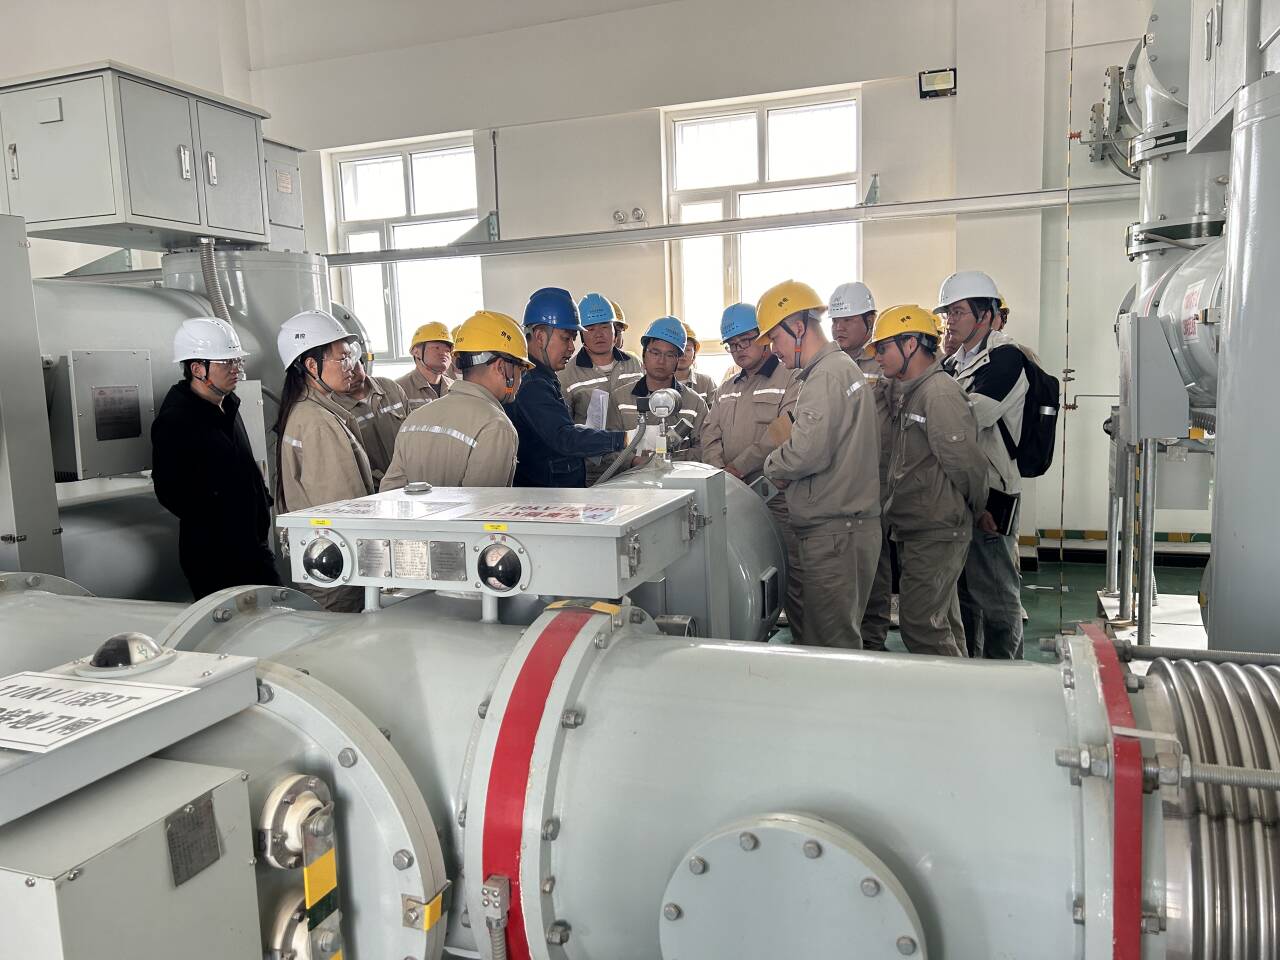 强弱项 补短板——南疆能源集团开展GIS设备专项培训